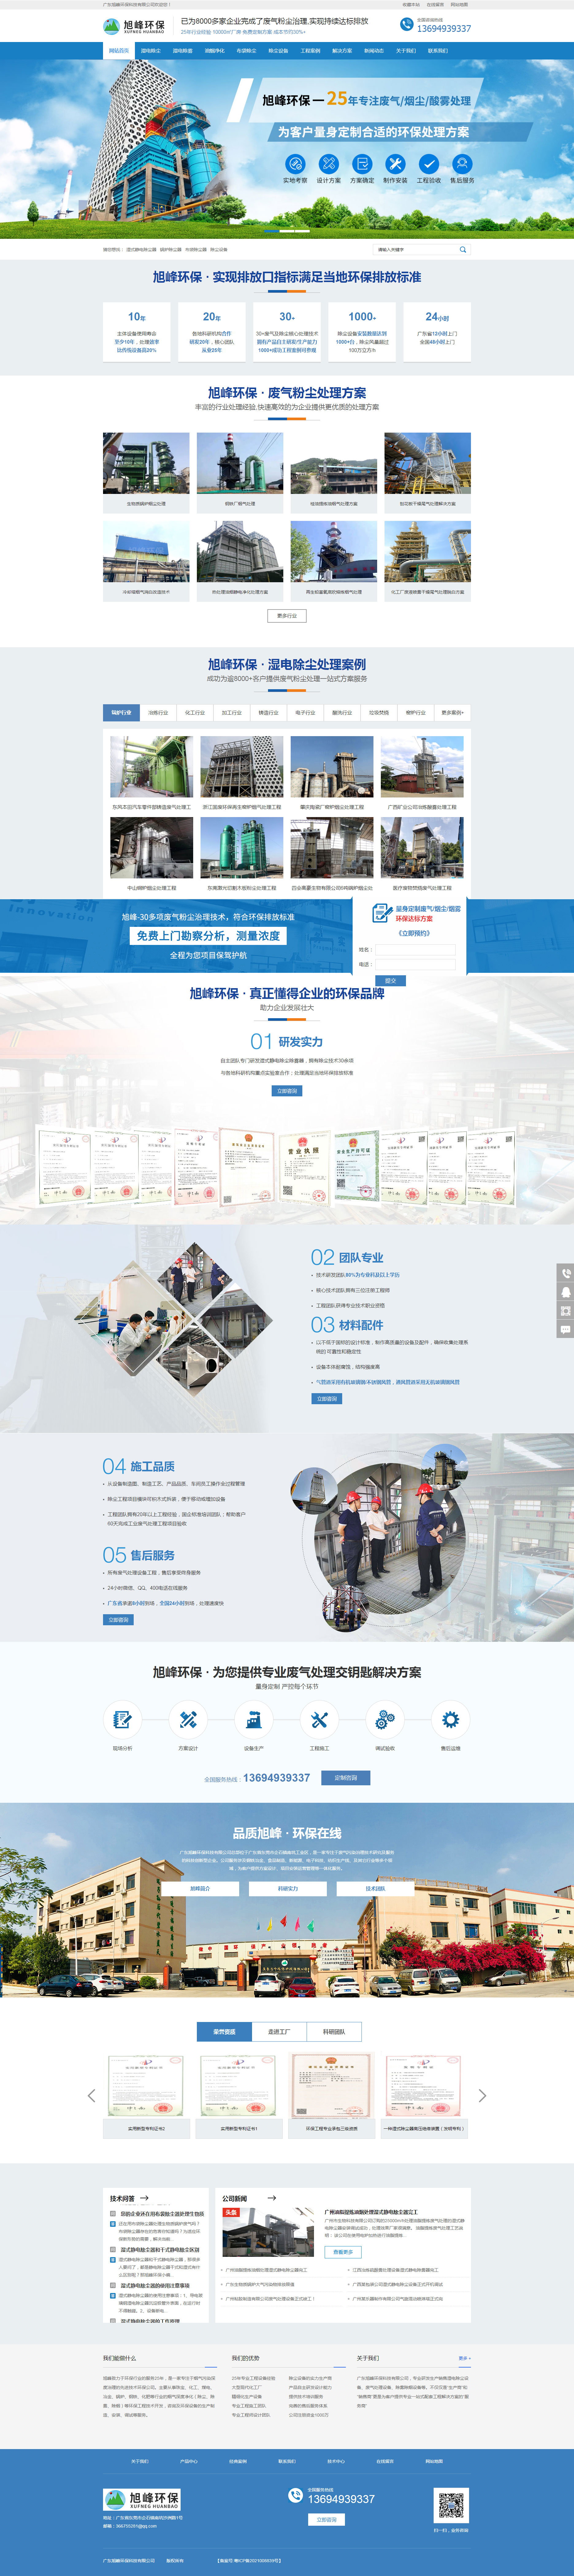 广东旭峰环保科技网站制作首页设计效果图